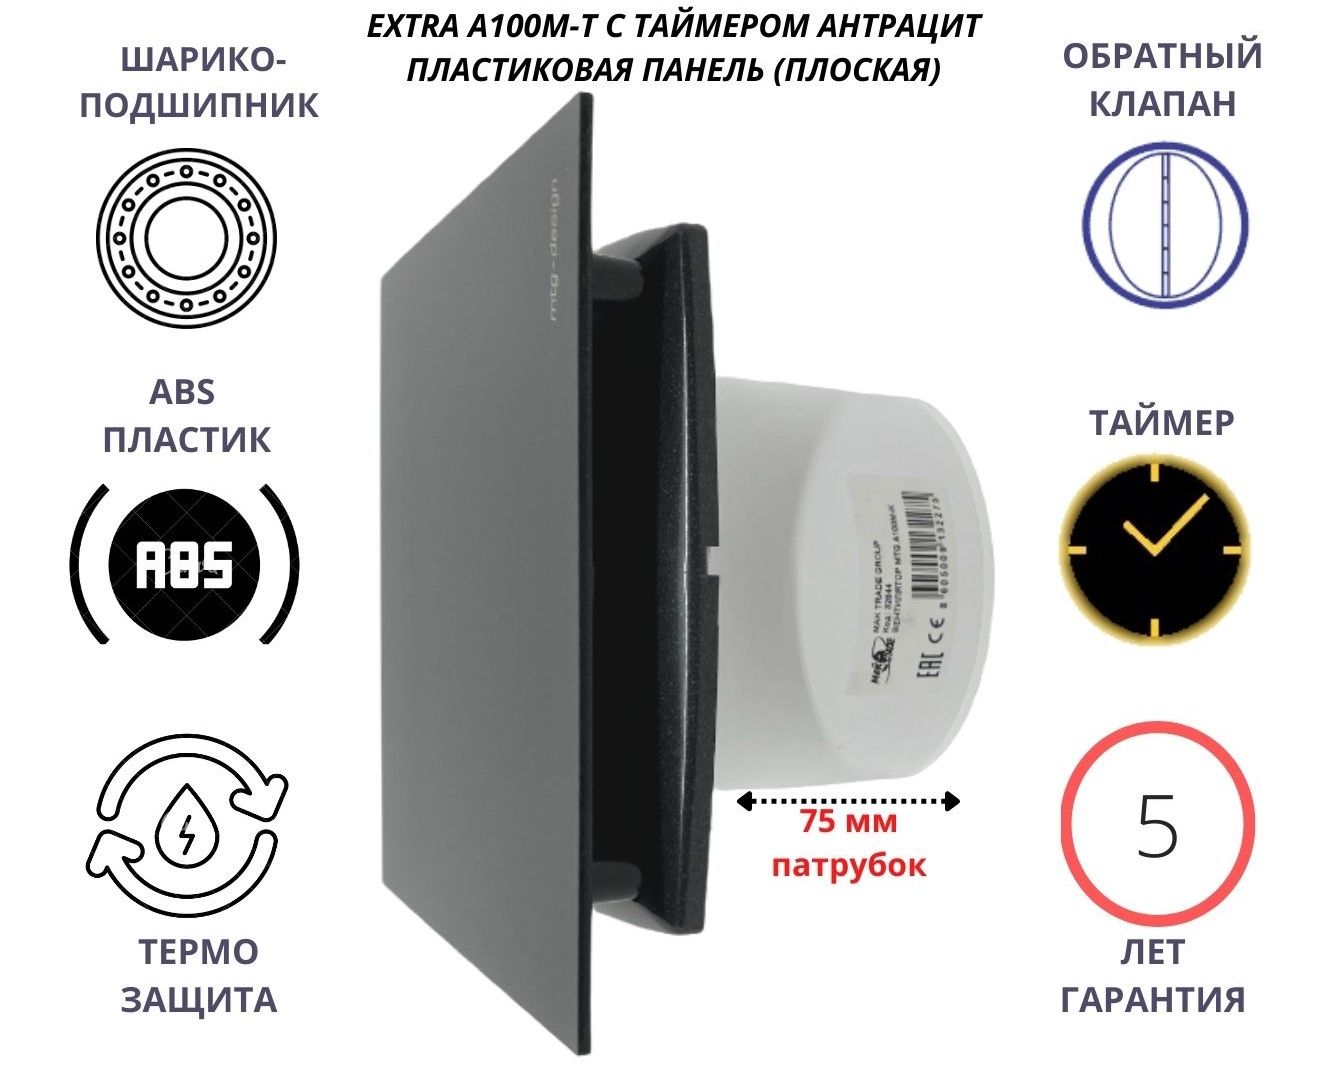 Вентилятор с таймером и плоской пластиковой панелью EXTRA100M-T+PL, Сербия, антрацит